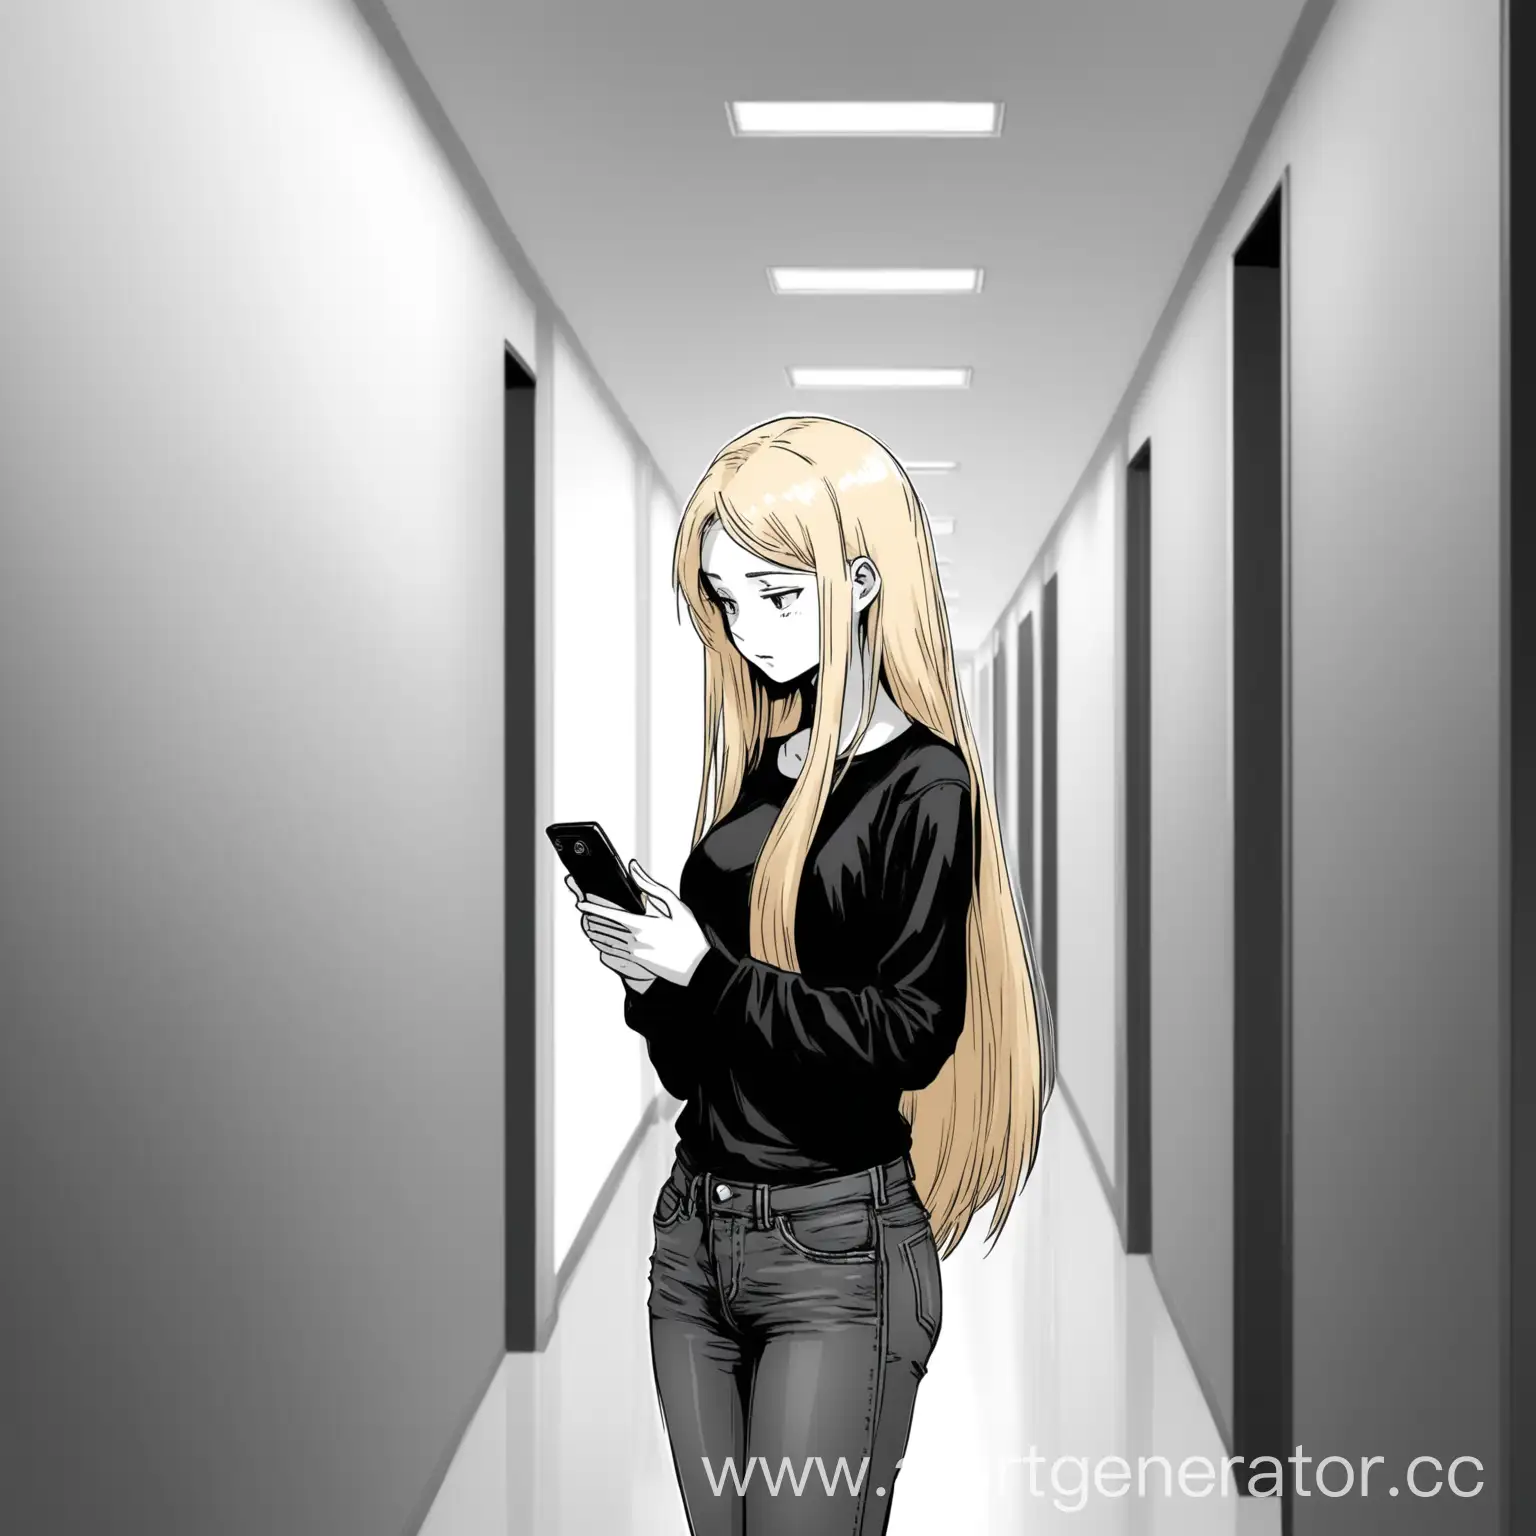 Blonde-Girl-in-University-Corridor-Checking-Phone-Manga-Style